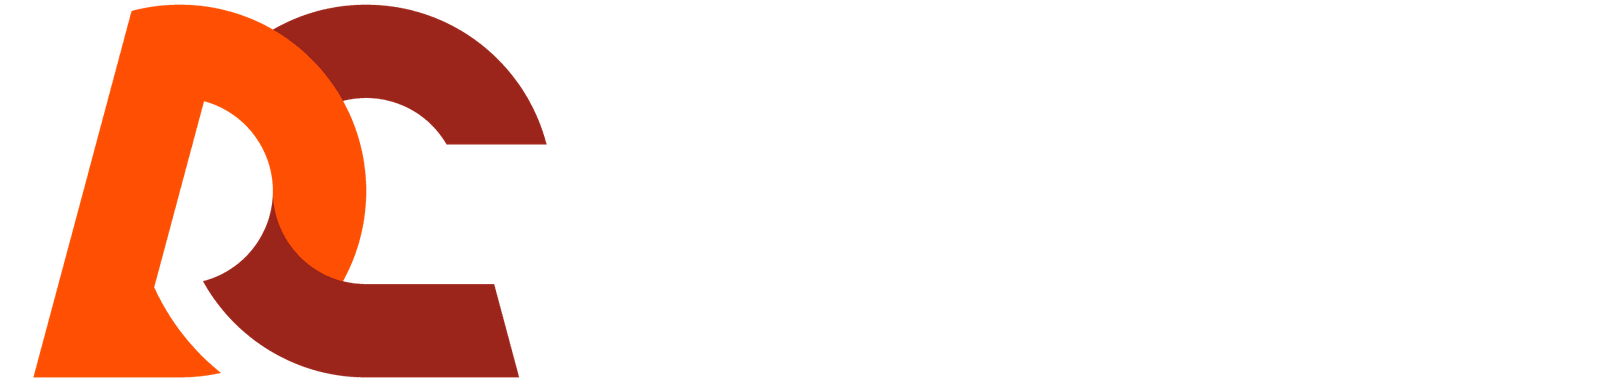 Roberto Ceccato | Formazione Commerciale